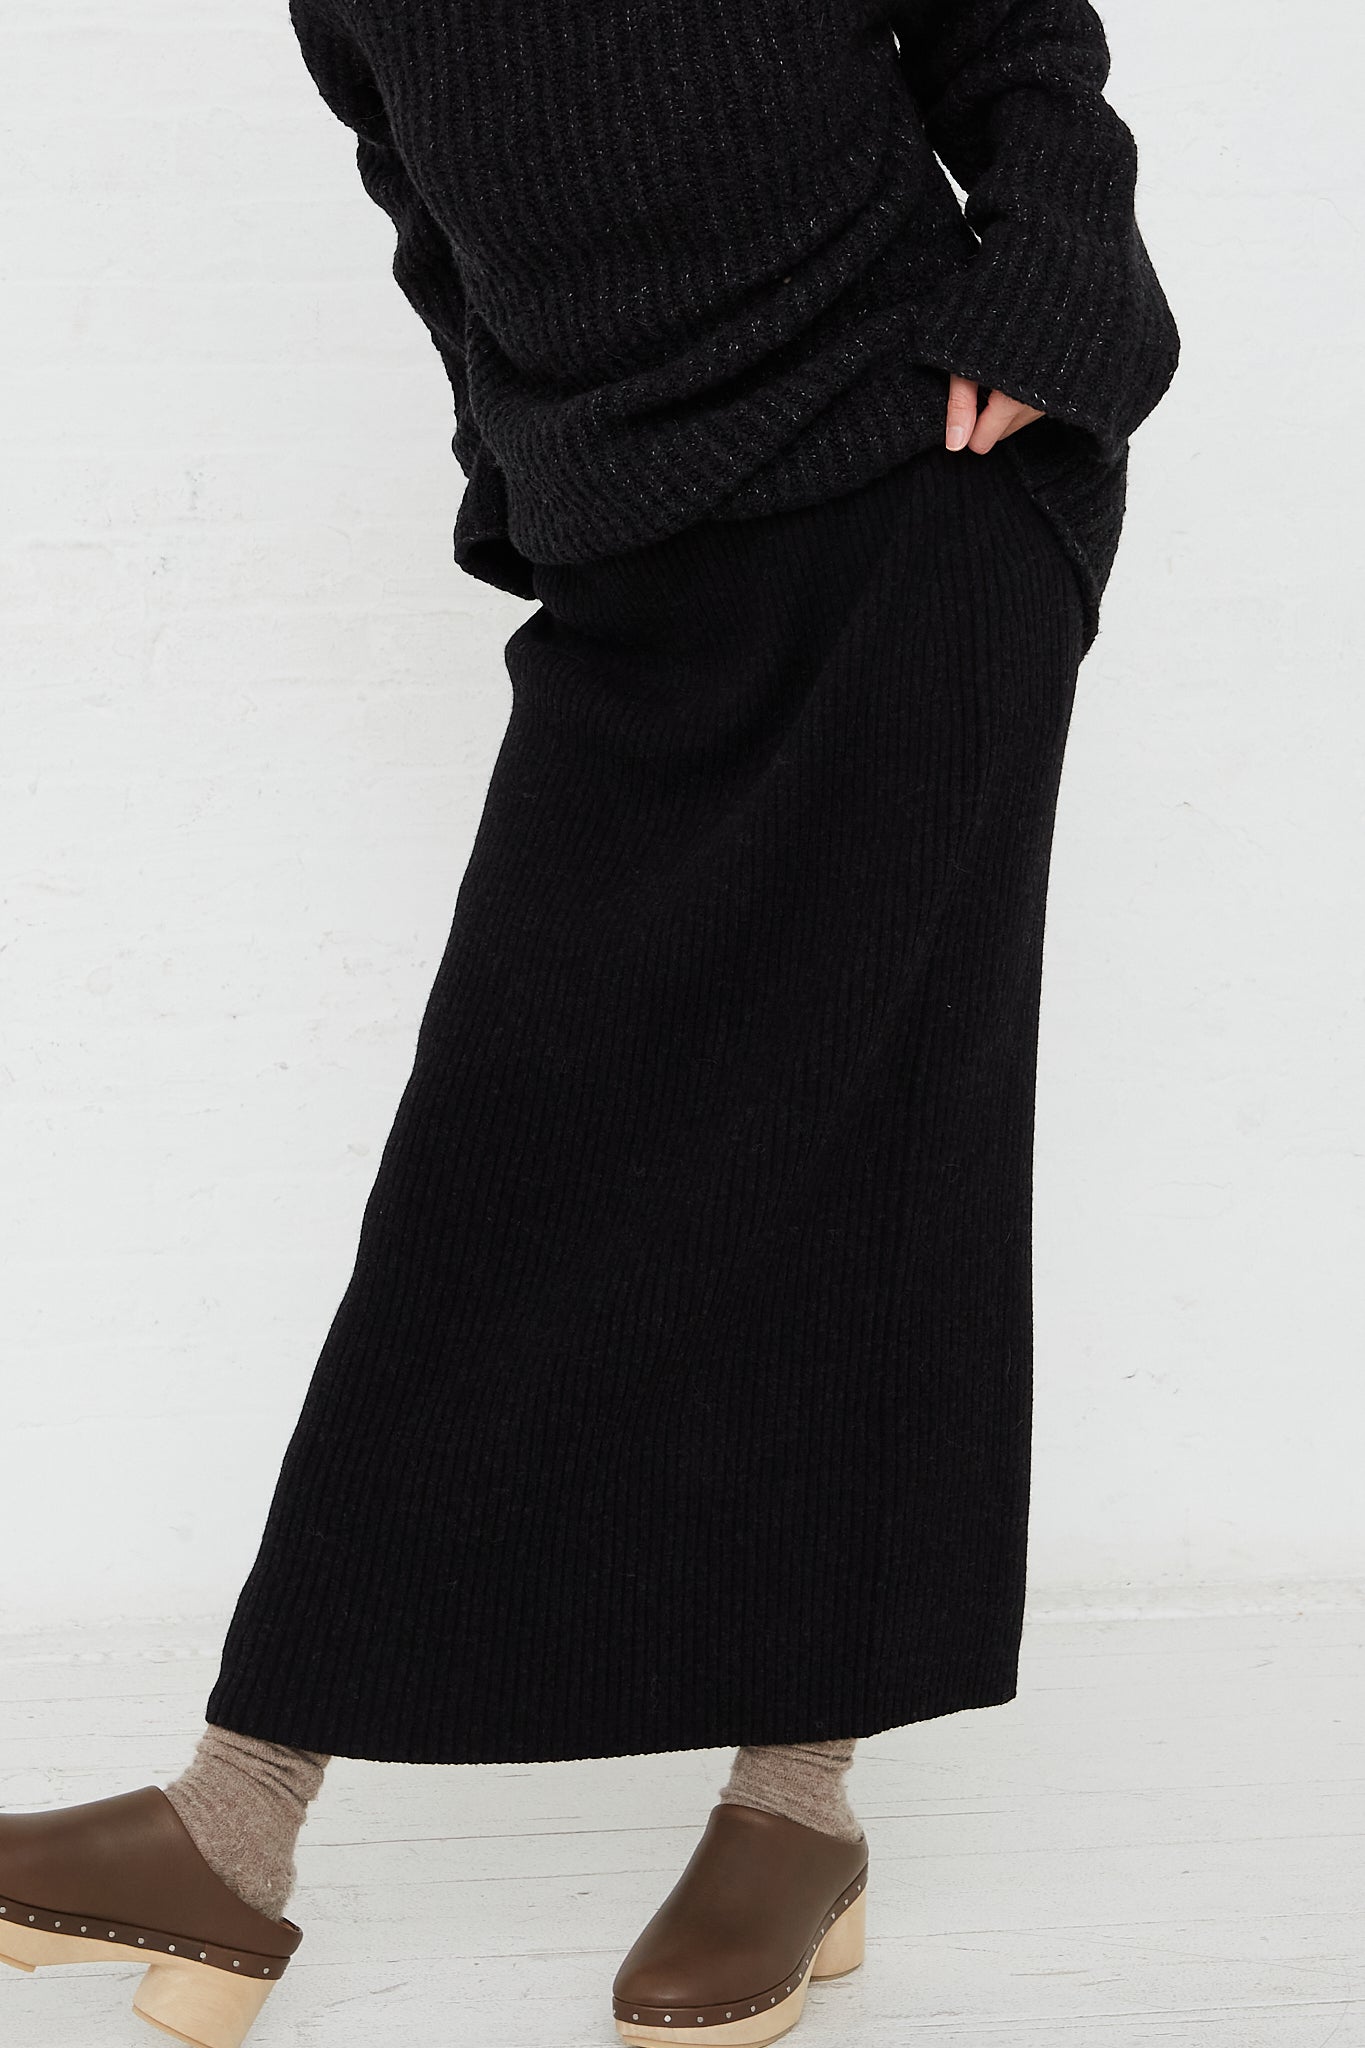 Rib Tube Skirt in Black Melange by Lauren Manoogian for Oroboro Front